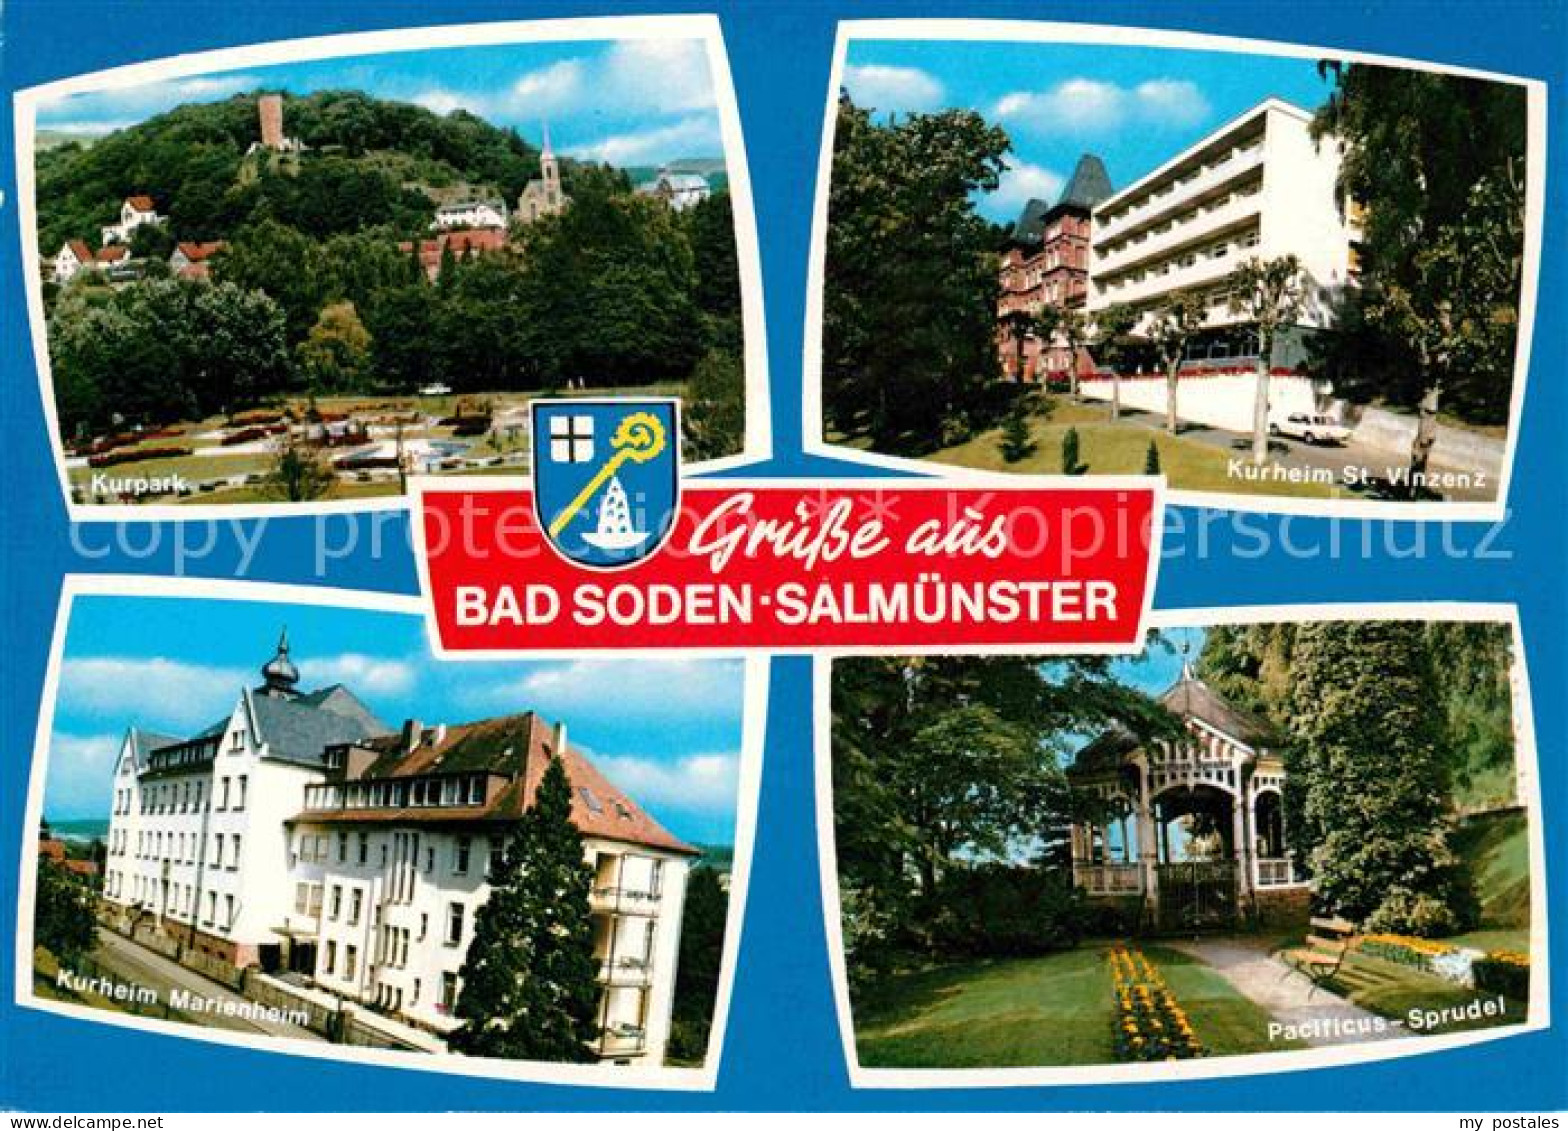 72694610 Salmuenster Bad Soden Kurpark Kurheim St Vinzenz Pacificus Sprudel Kurh - Bad Soden